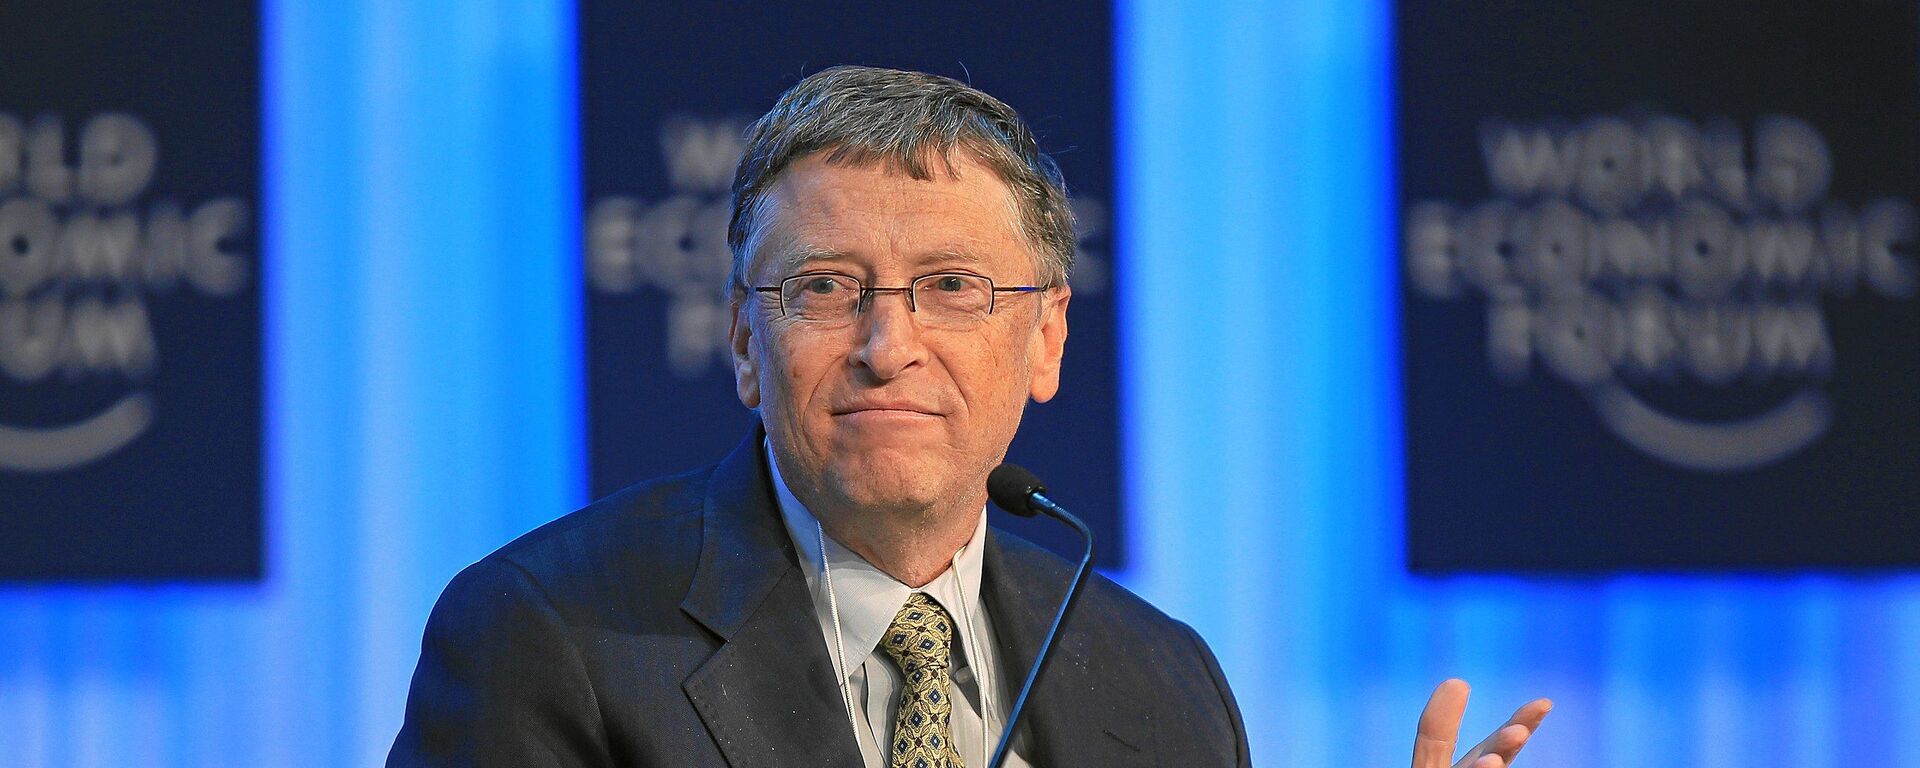 Milijarder i osnivač Majkrosofta Bil Gejts na Svetskom ekonomskom forumu 2013. godine - Sputnik Srbija, 1920, 20.05.2021